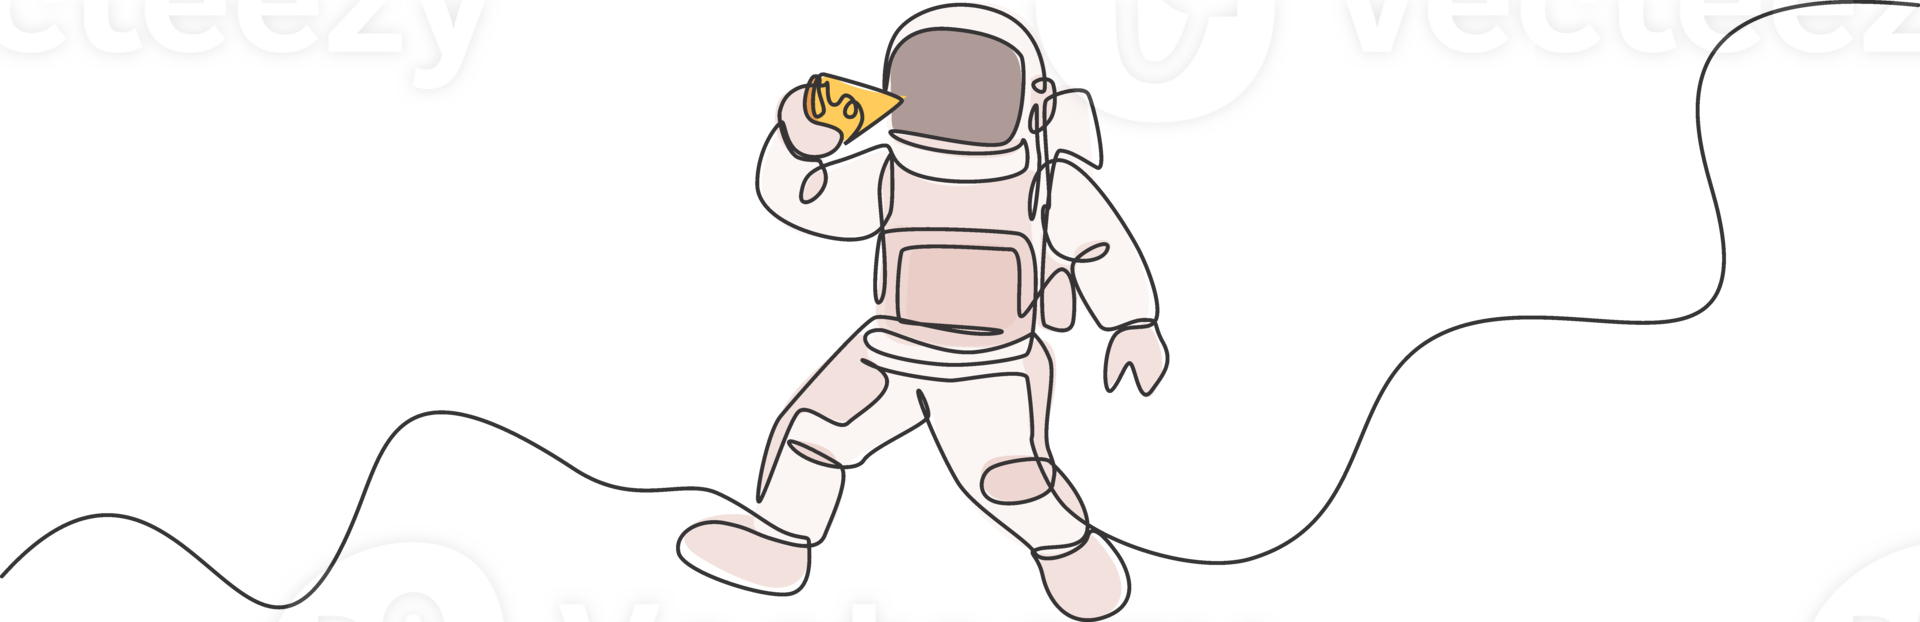 uno continuo línea dibujo cosmonauta comiendo delicioso Fresco italiano Pizza en galáctico universo. fantasía exterior espacio astronauta vida concepto. dinámica soltero línea dibujar diseño gráfico ilustración png